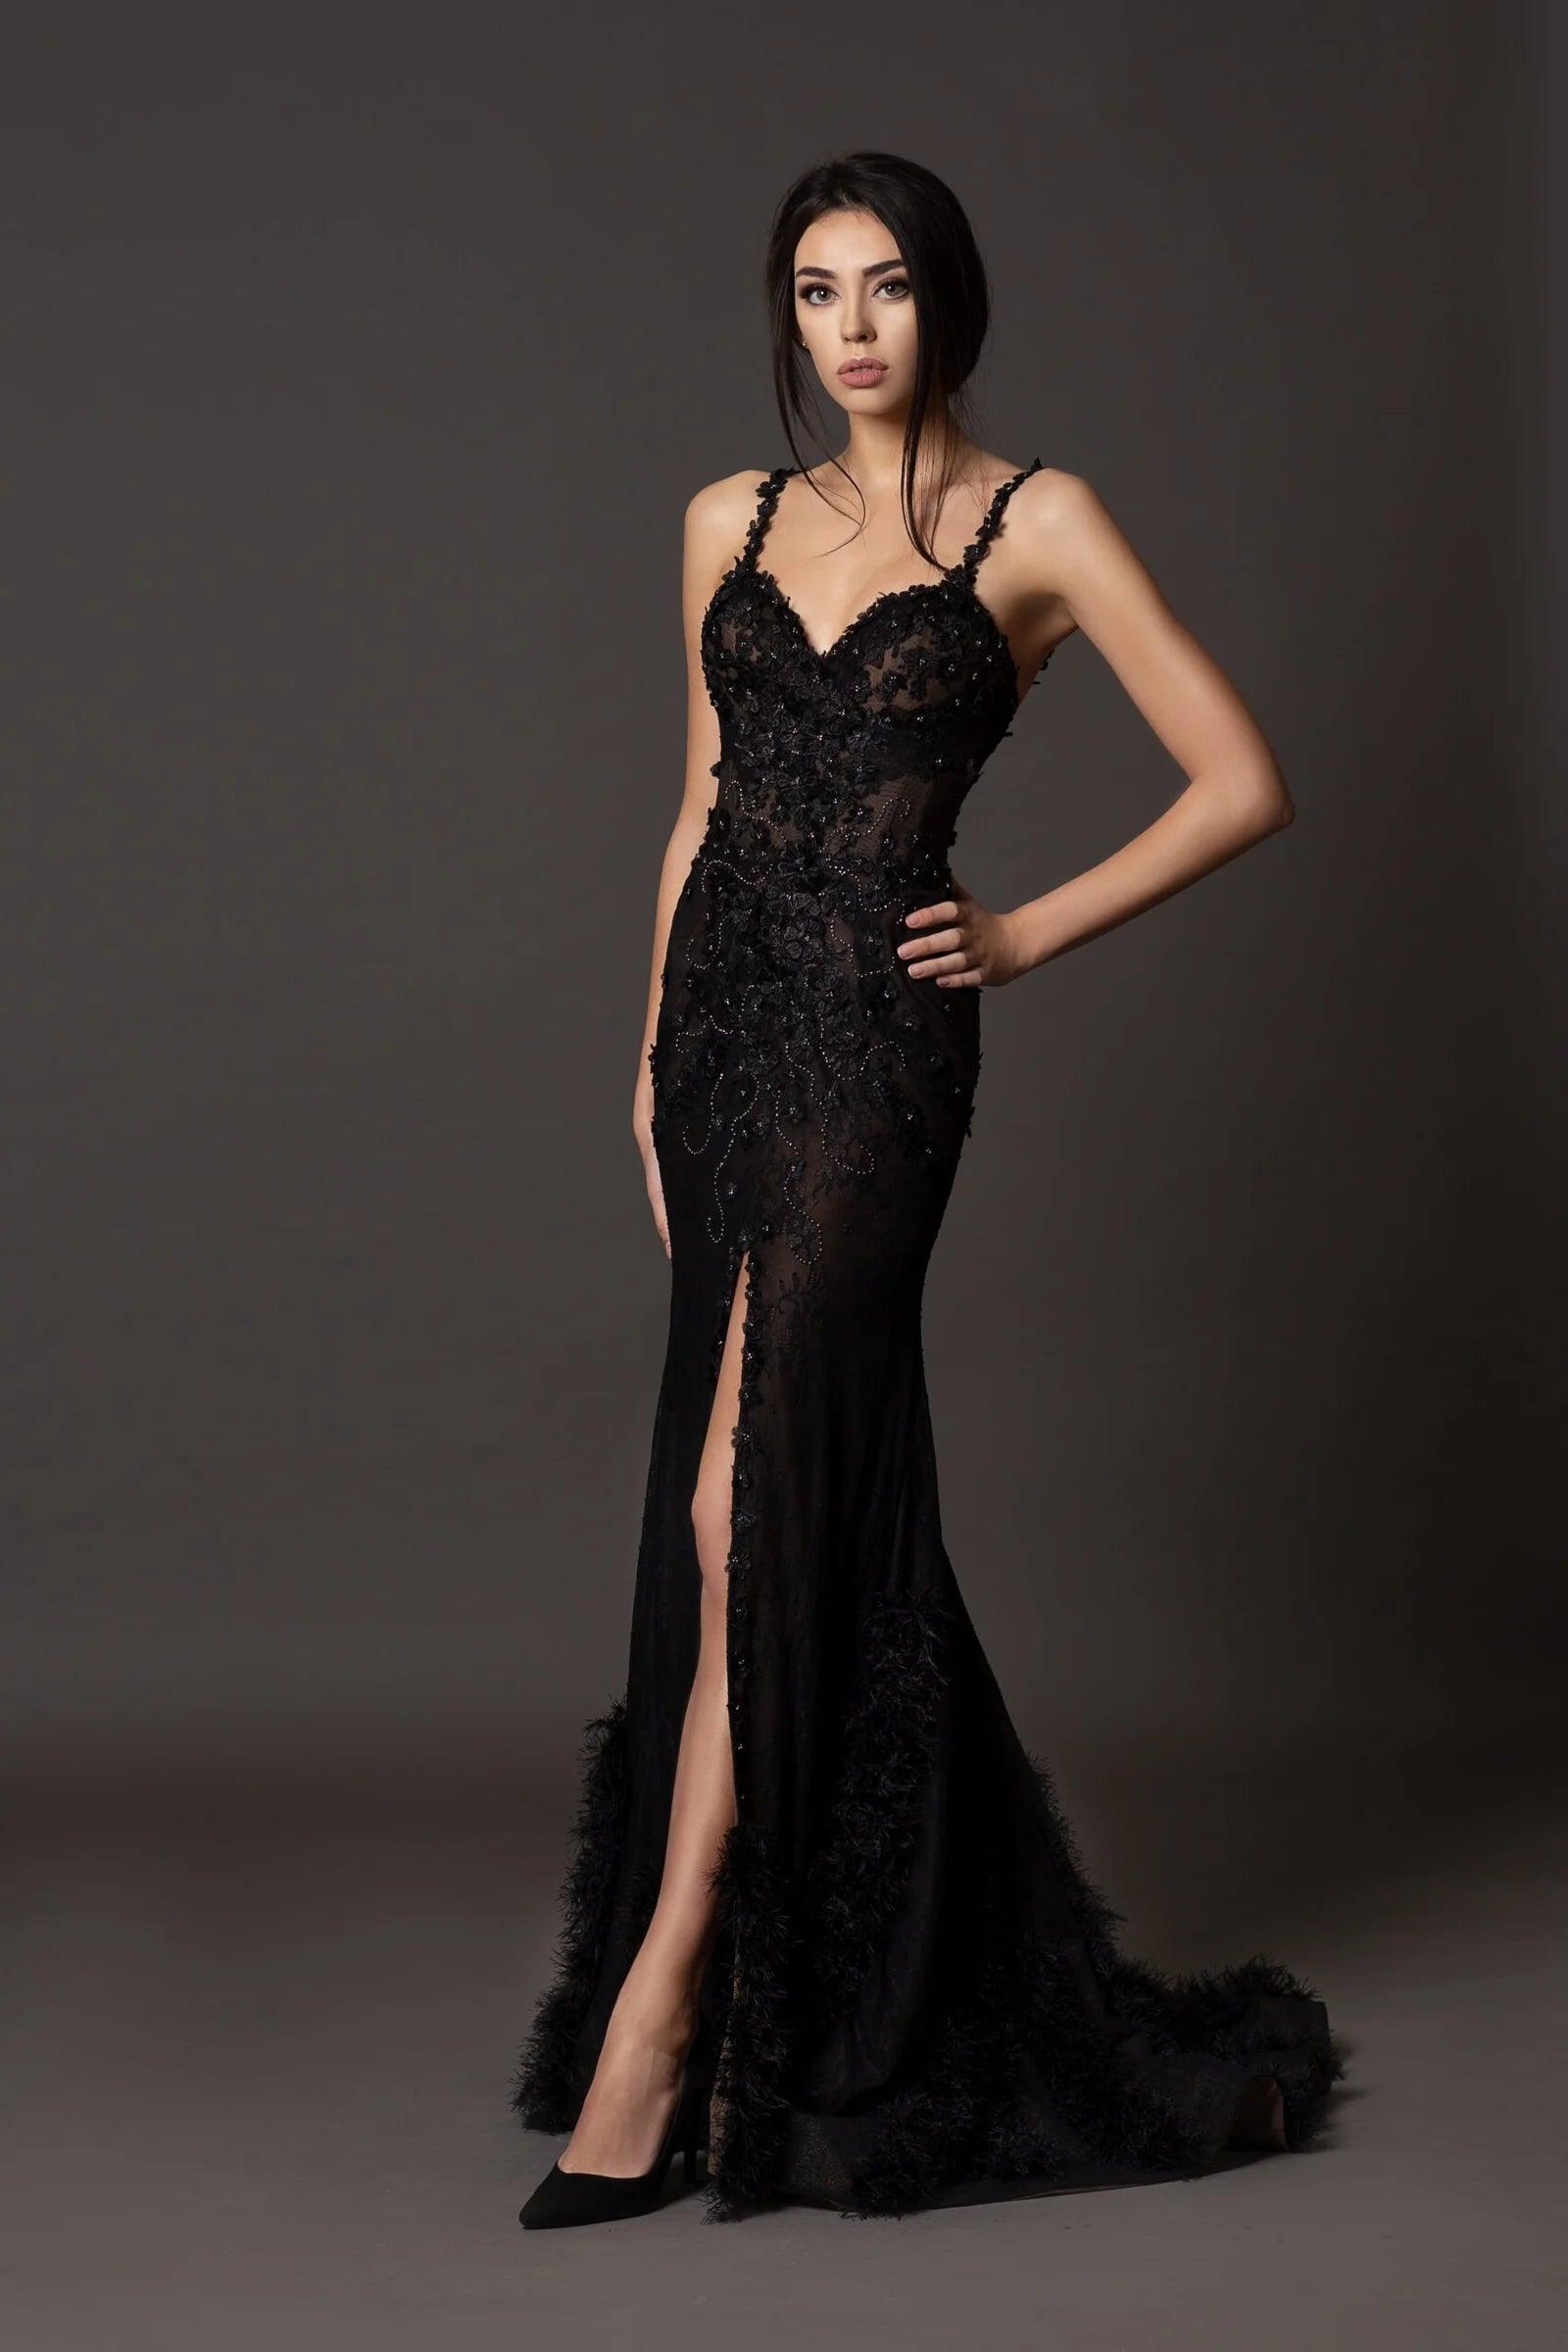 Unique Black Lace Gown with slit